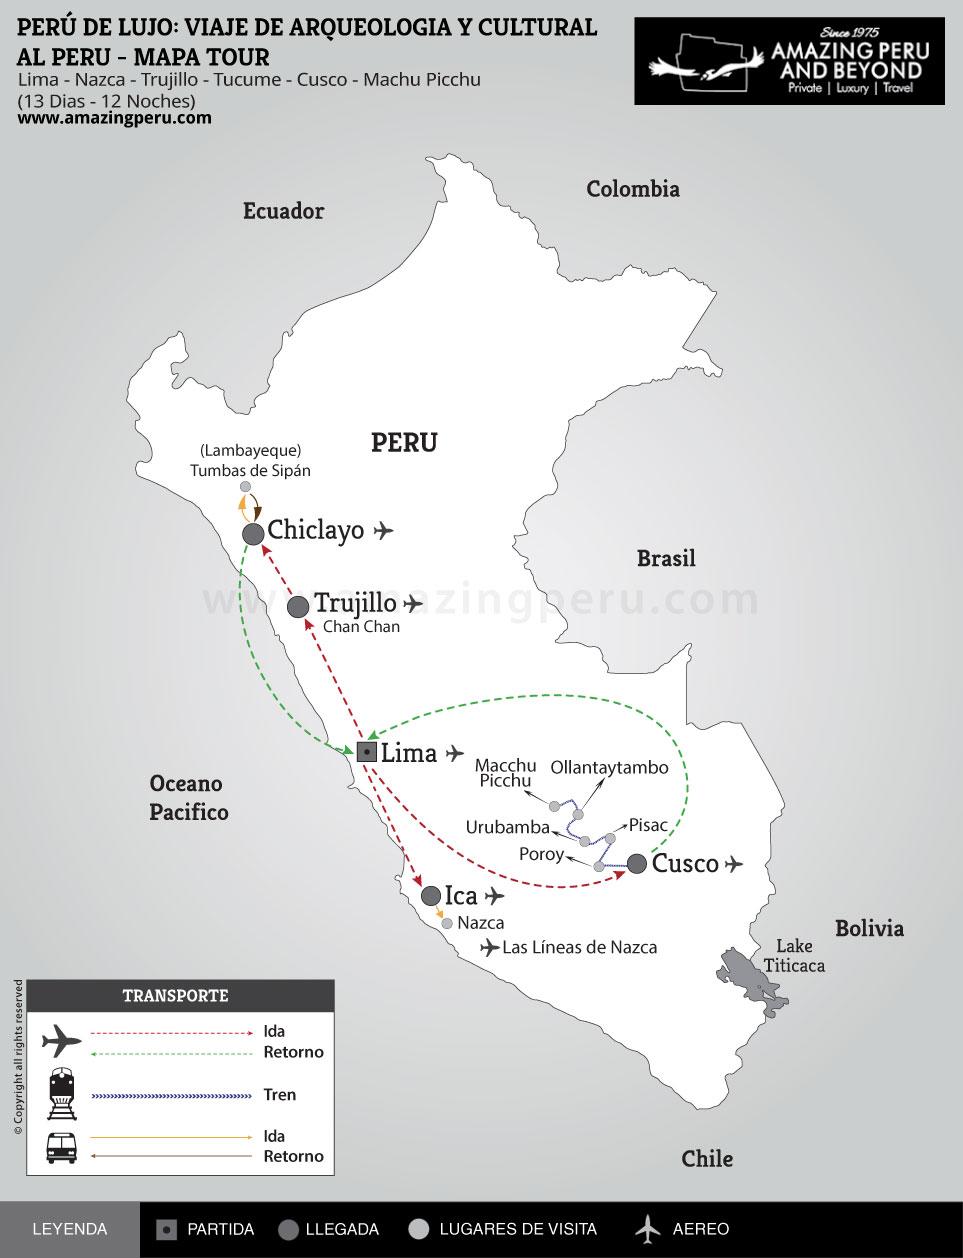 Peru de Lujo: Viaje de Arqueologa y Cultural al Per